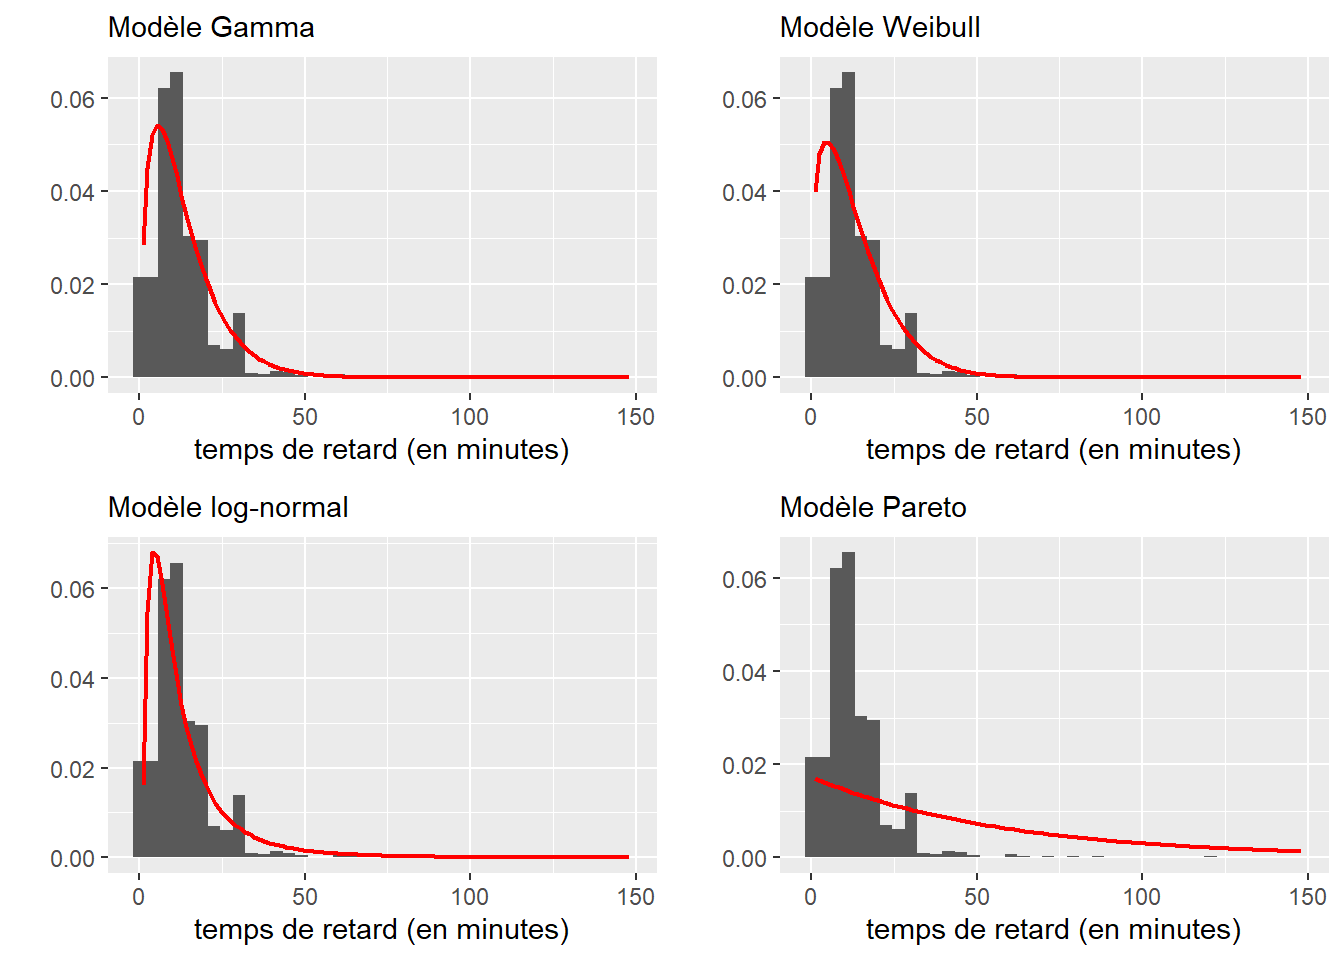 Comparaison des distributions ajustées aux données de retard des bus